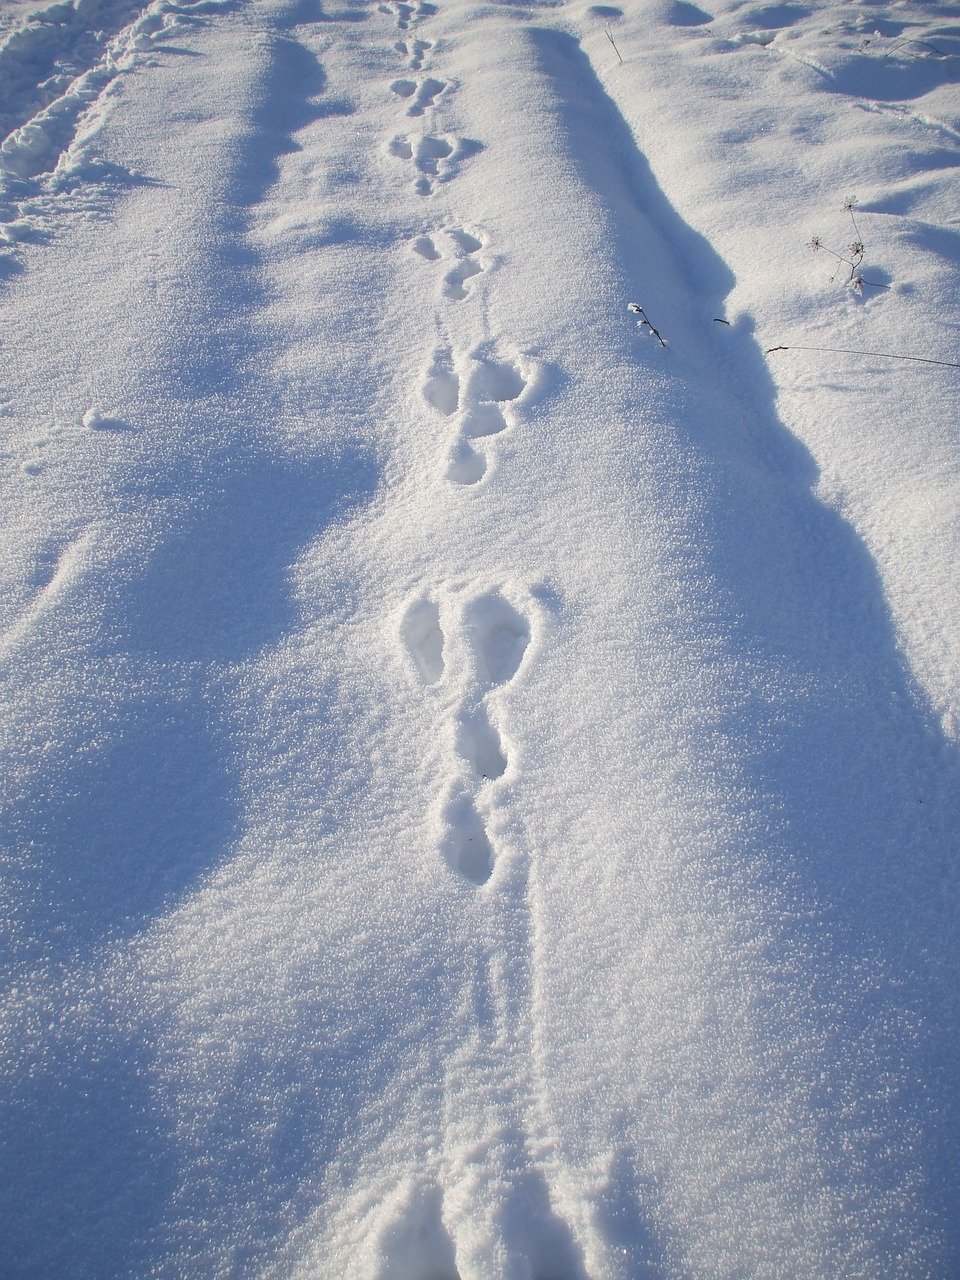 Заячьи следы на снегу